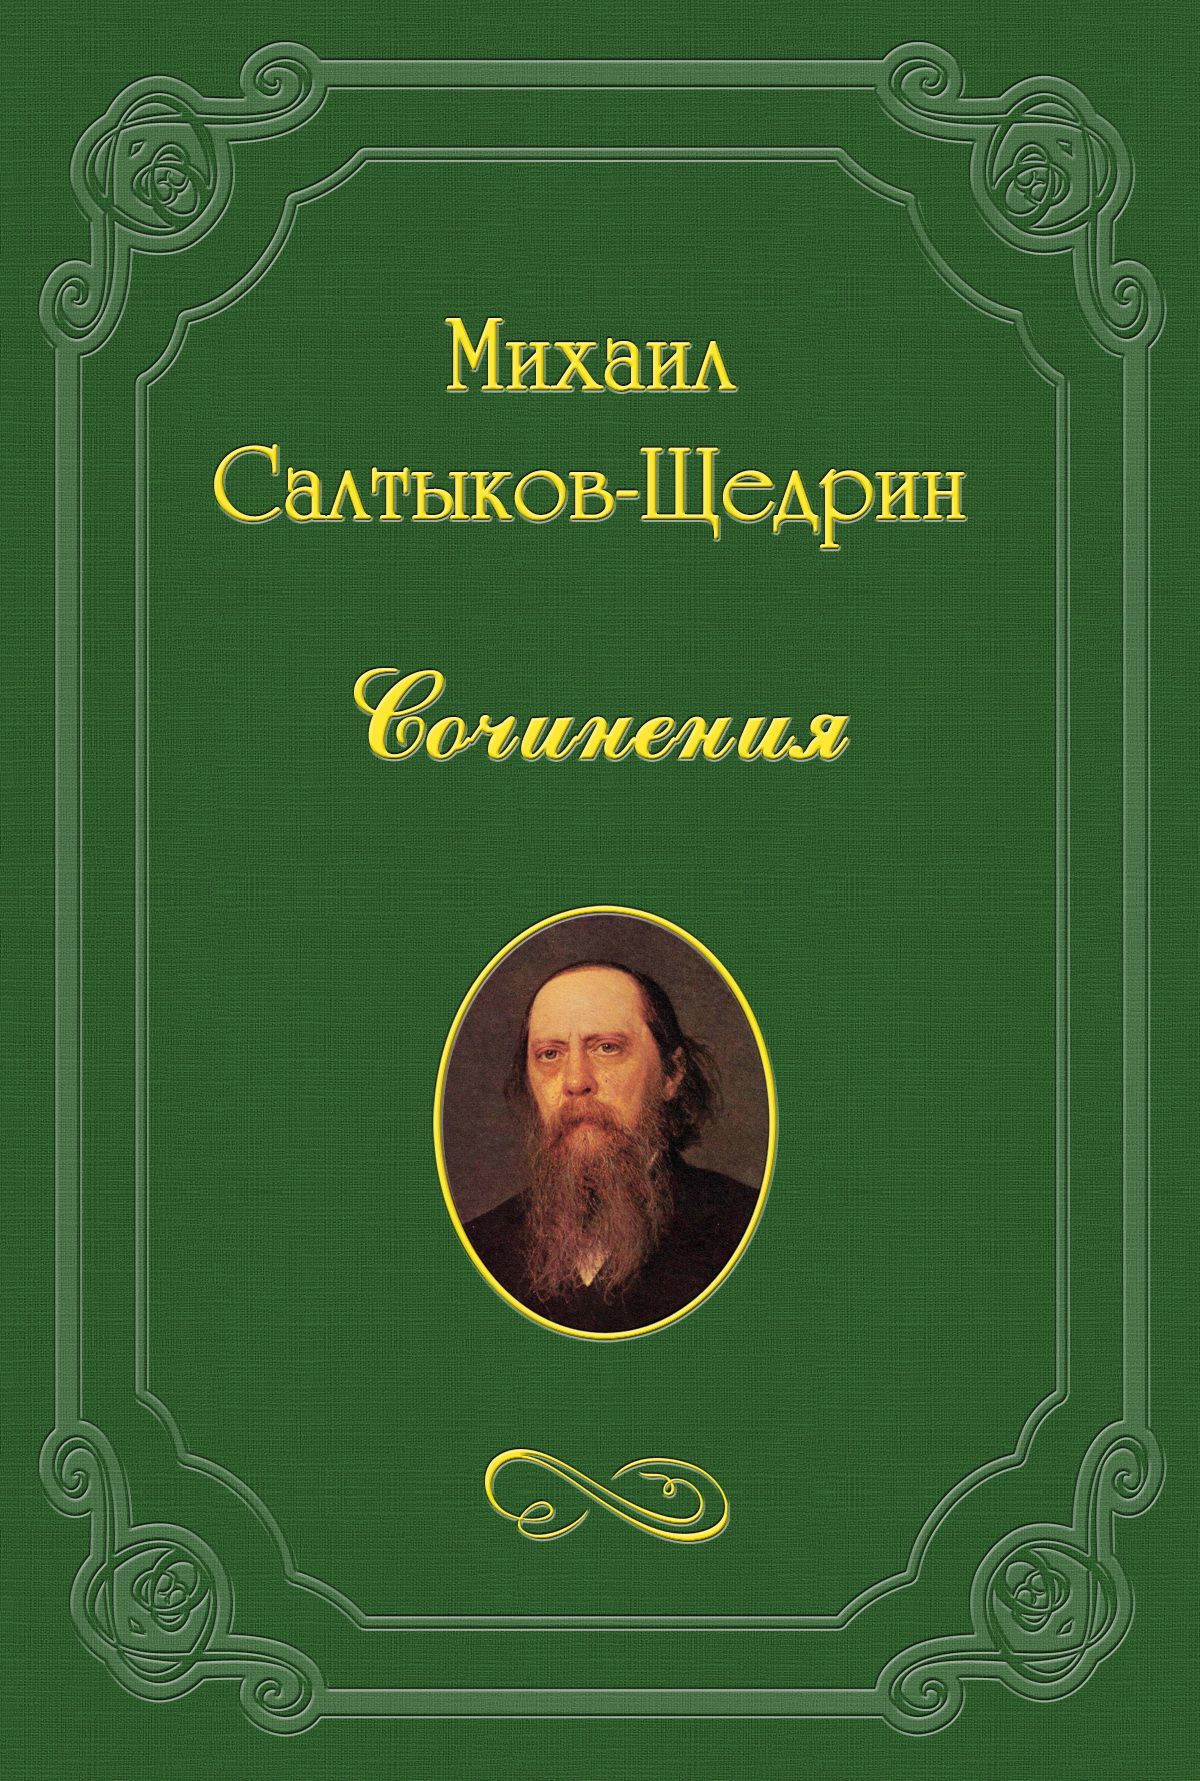 Книга Русские демократы из серии , созданная Михаил Салтыков-Щедрин, может относится к жанру Критика. Стоимость книги Русские демократы  с идентификатором 3132915 составляет 5.99 руб.